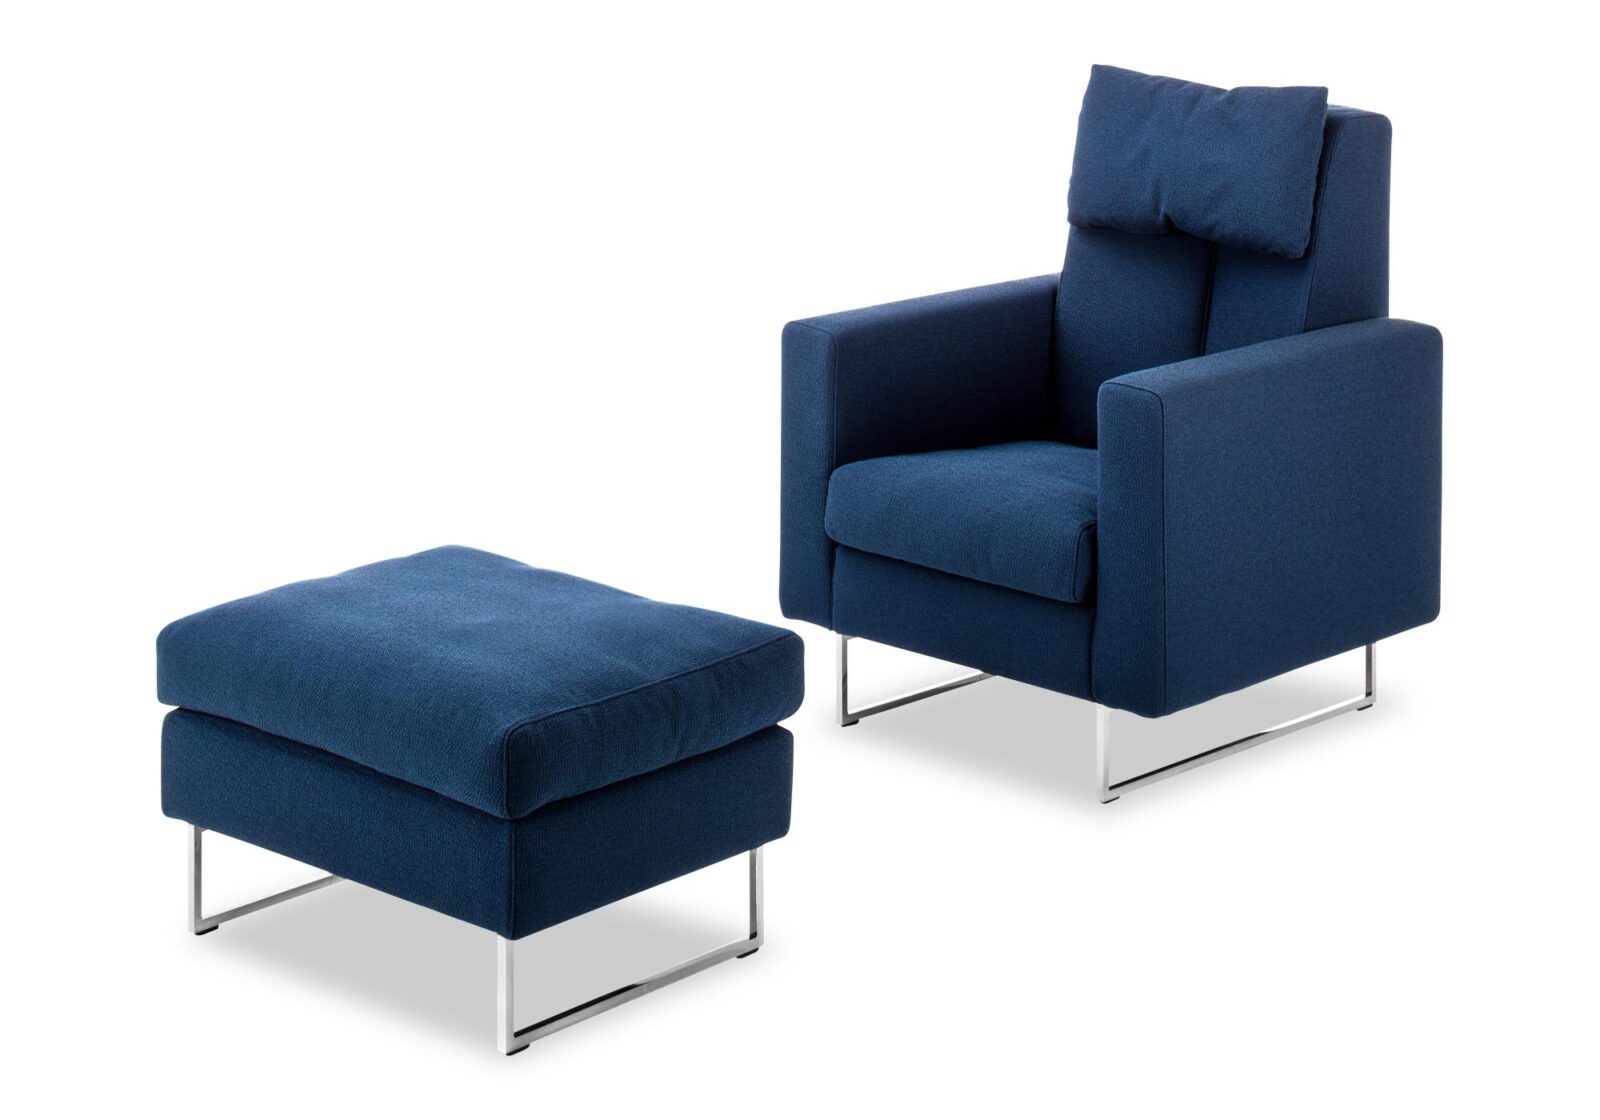 Sessel mit Hocker mit Armlehnen. Bezug: Stoff. Farbe: Dunkelblau. Erhältlich bei Möbel Gallati.